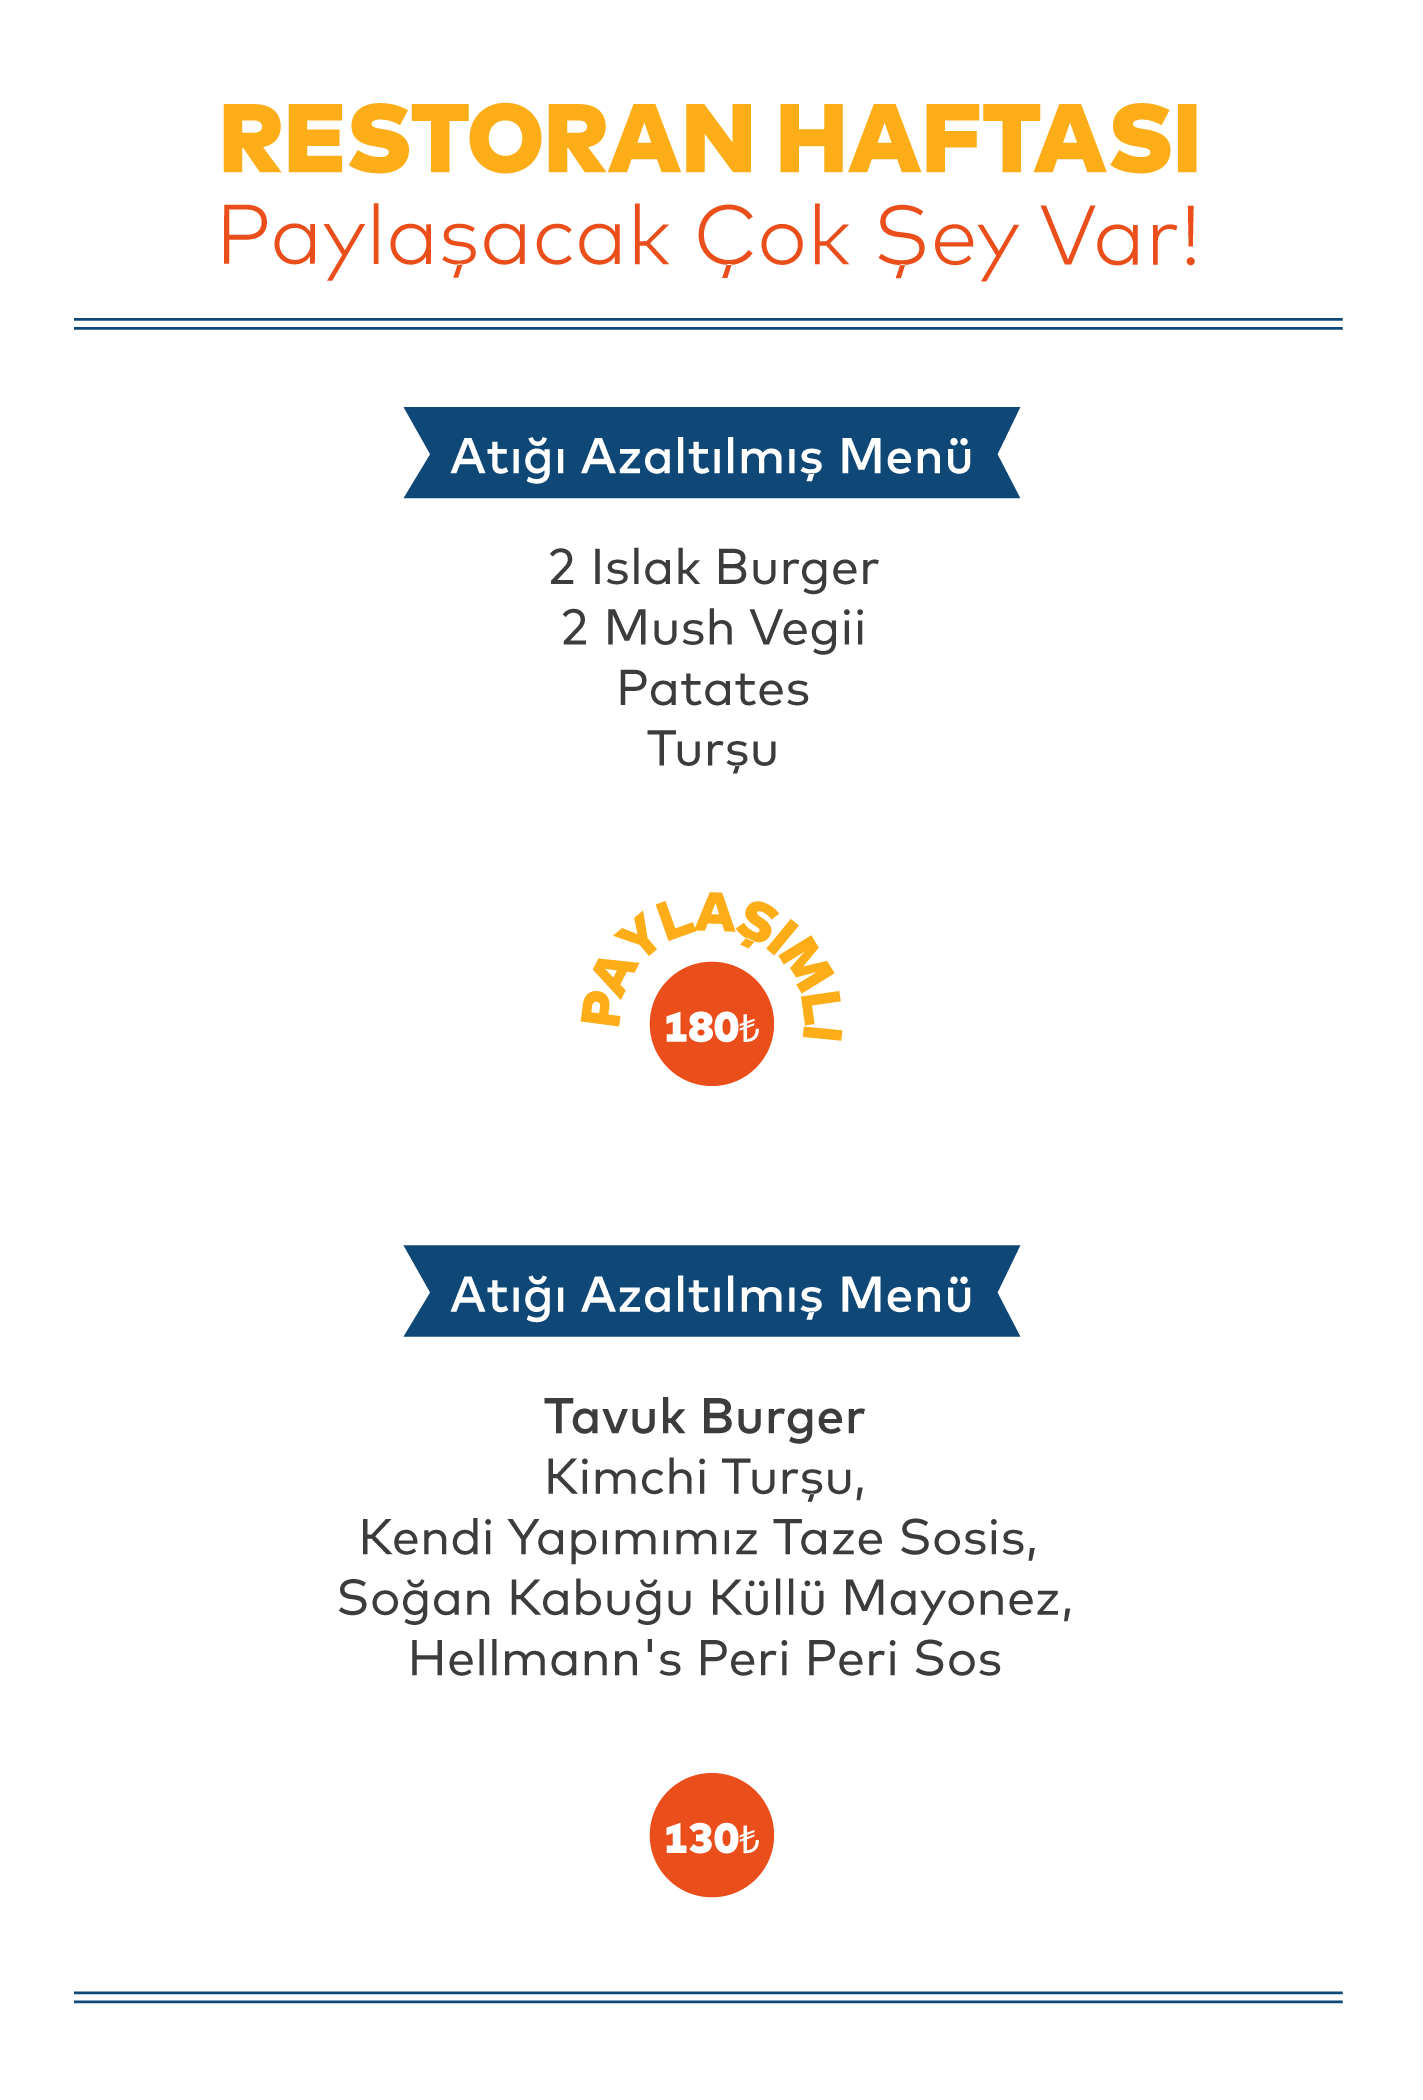 menu_etmanyakburger